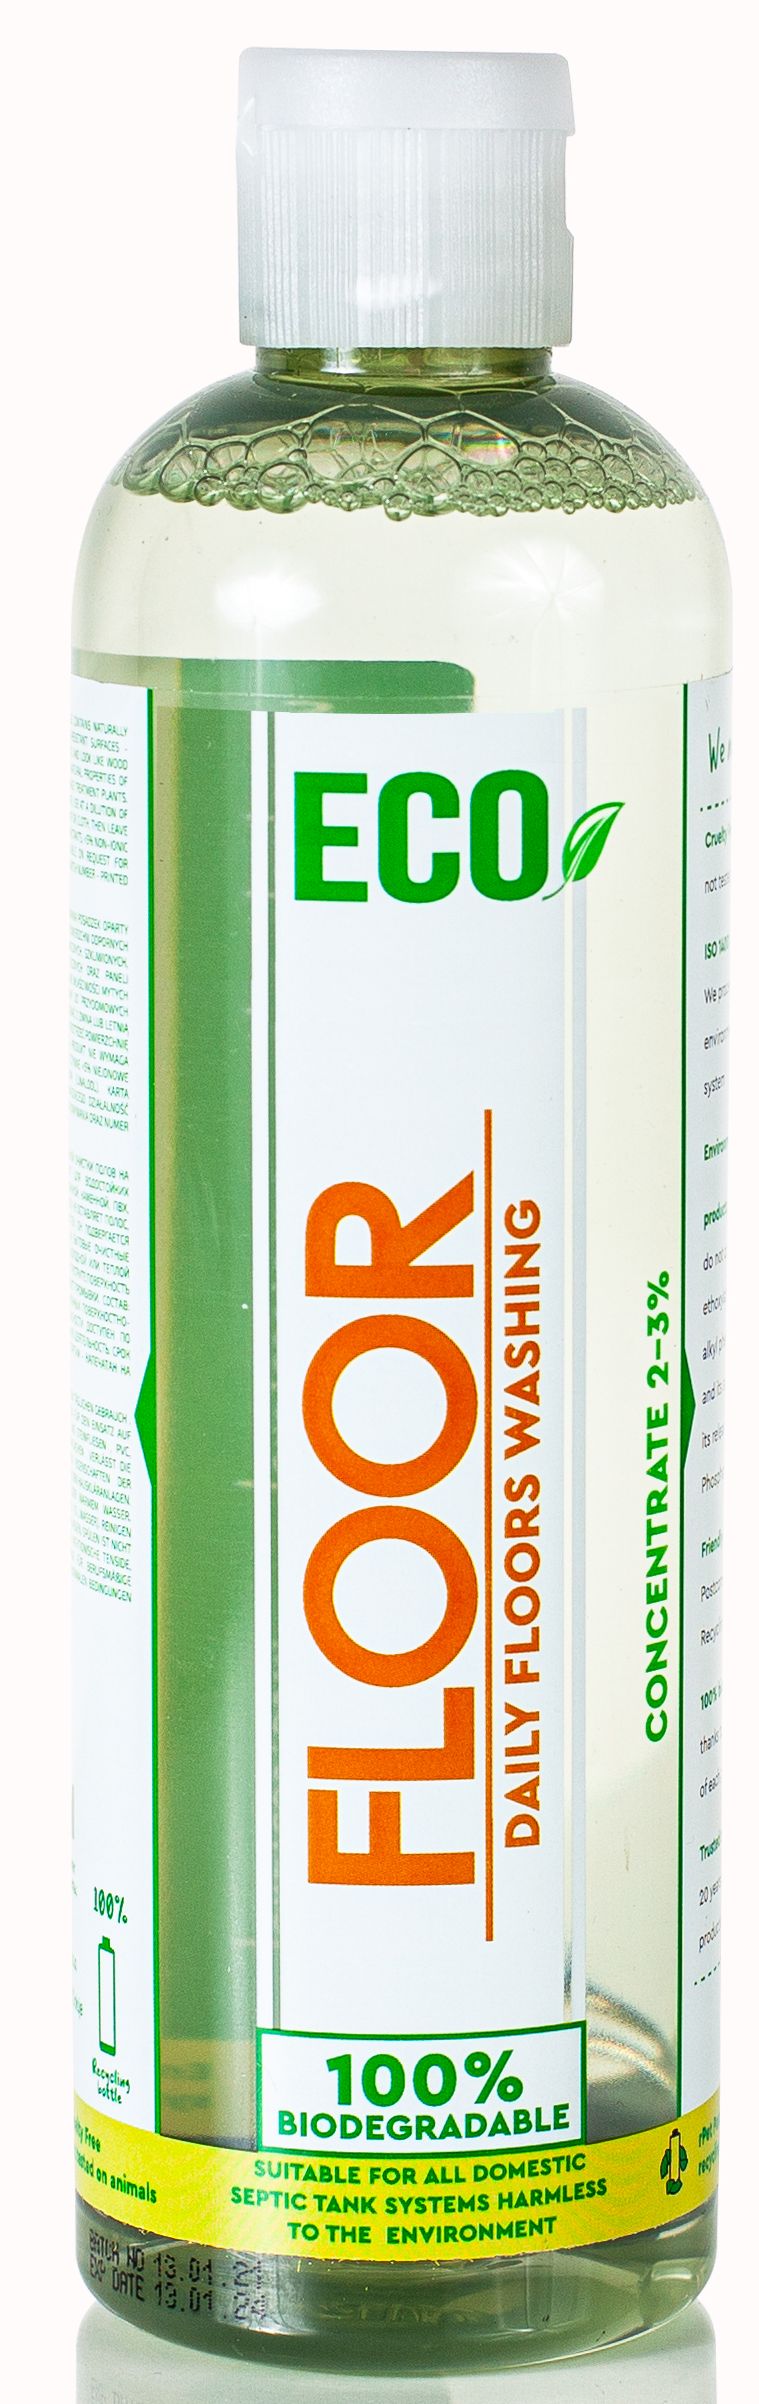 Zobrazit detail výrobku Tenzi Prostředek pro čištění podlah Eco Floor 450 ml